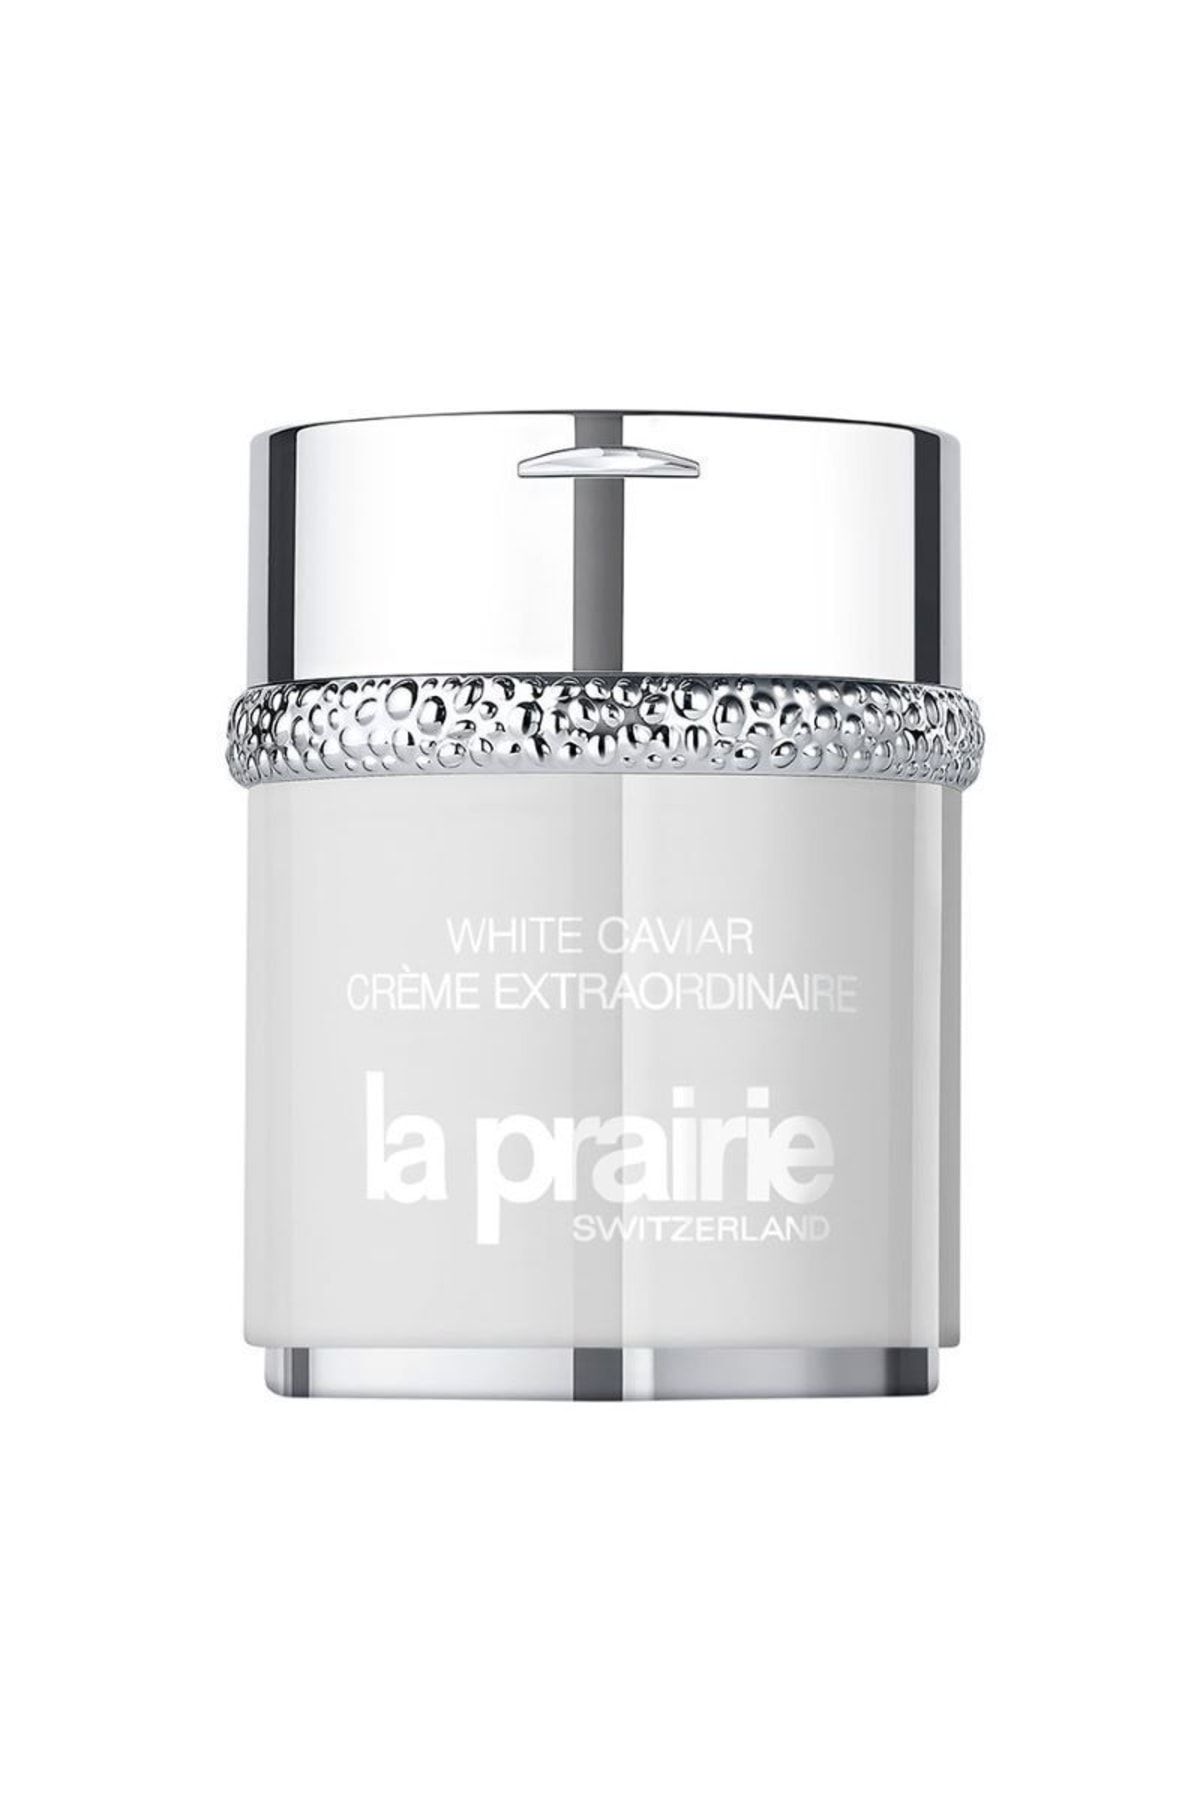 La Prairie Yaşlanma Karşıtı Sıkılaştırıcı Ve Aydınlatıcı Beyaz Havyar Kremi-60ml